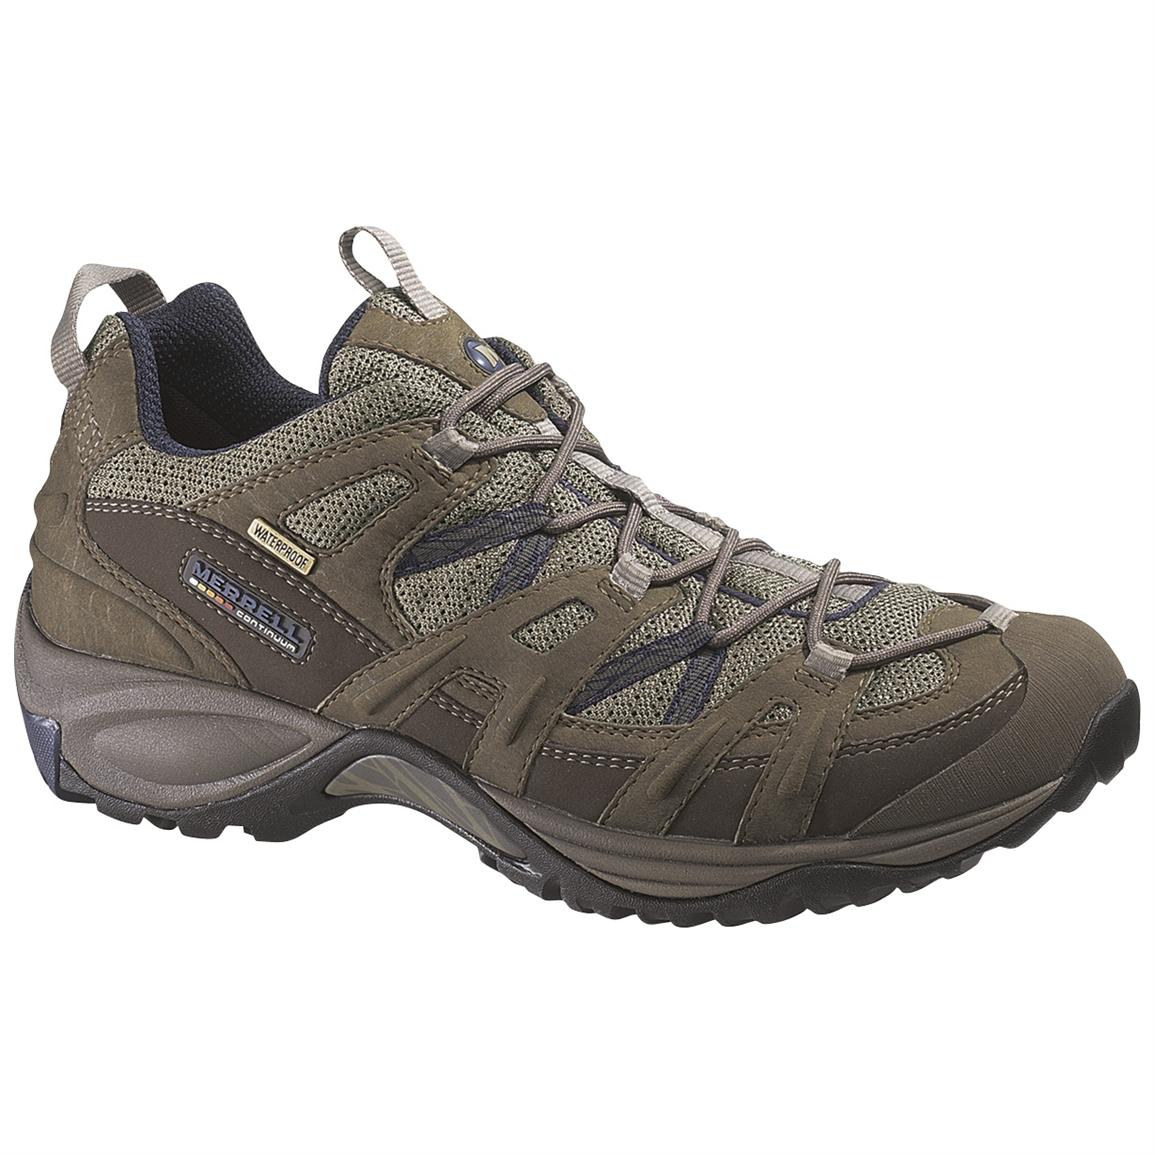 Men's Merrell® Pantheon Low Waterproof Hikers - 159556, Hiking Boots ...